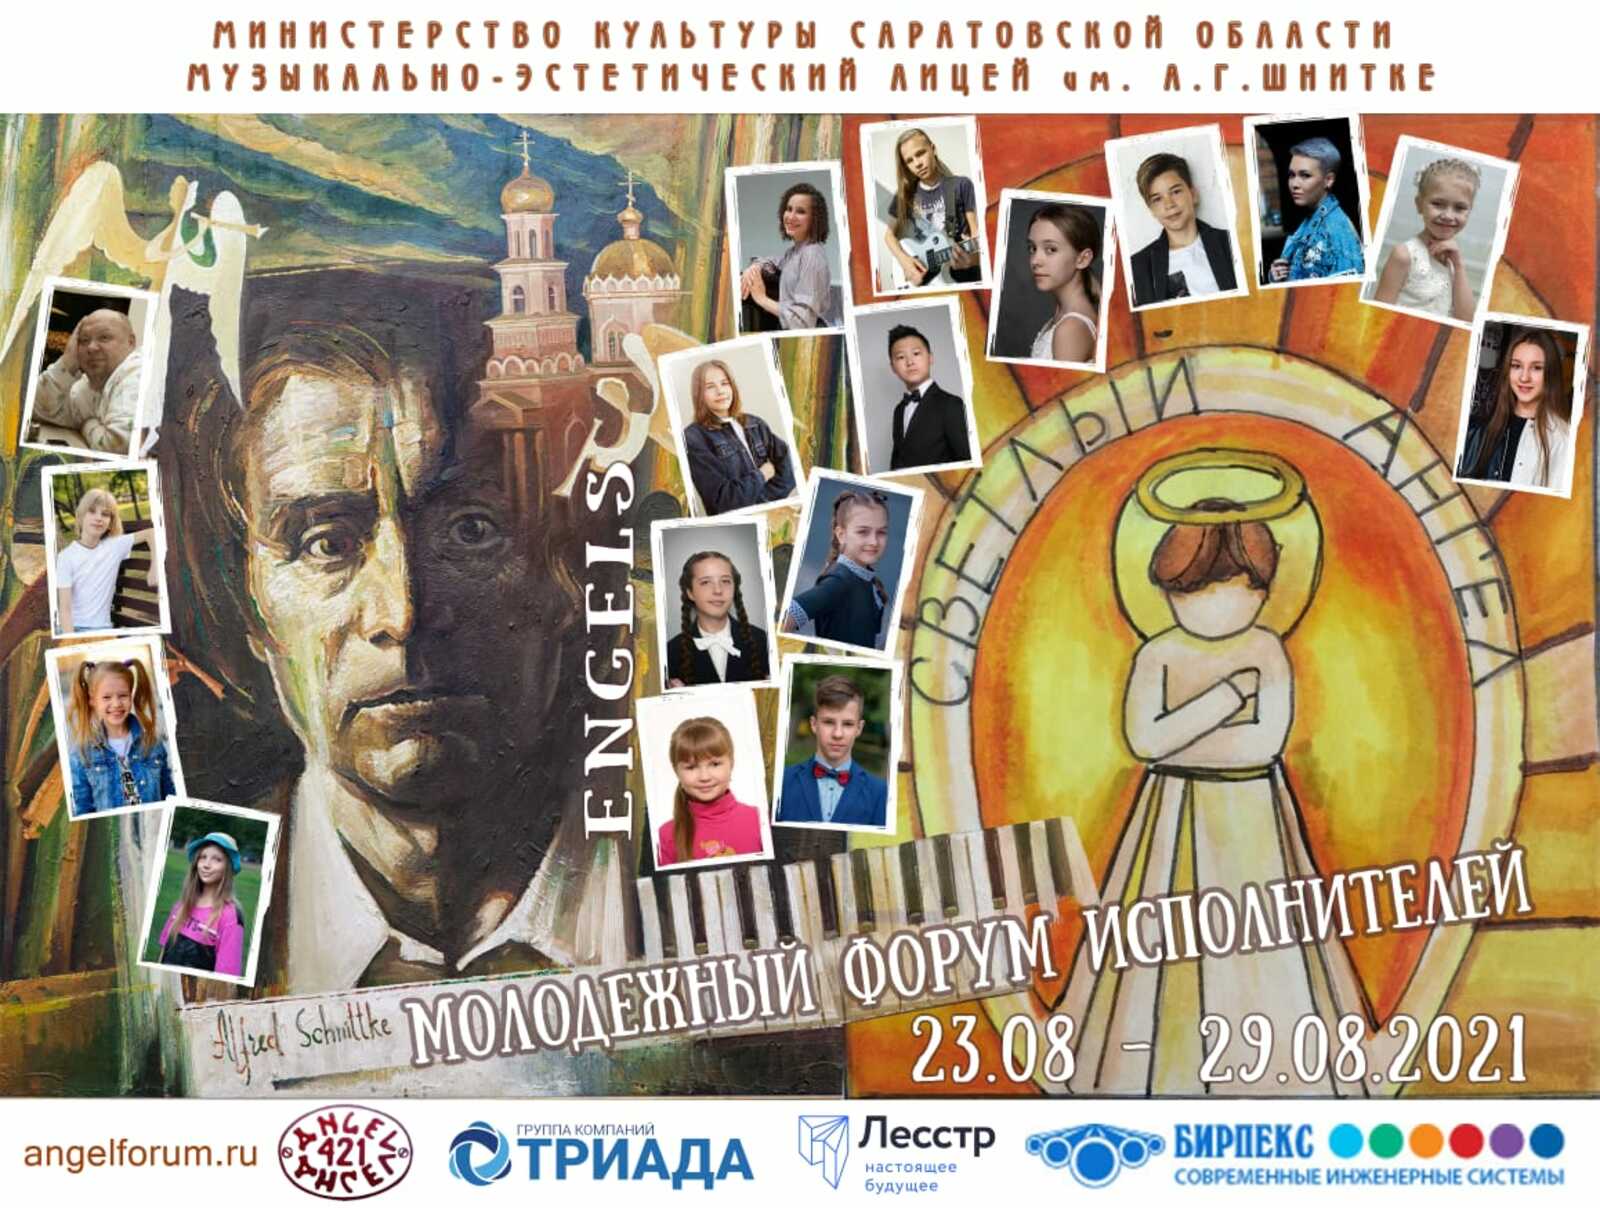 Двое детей из Башкортостана примут участие в I Молодëжном форуме исполнителей им. А.Г. Шнитке «Светлый Ангел»